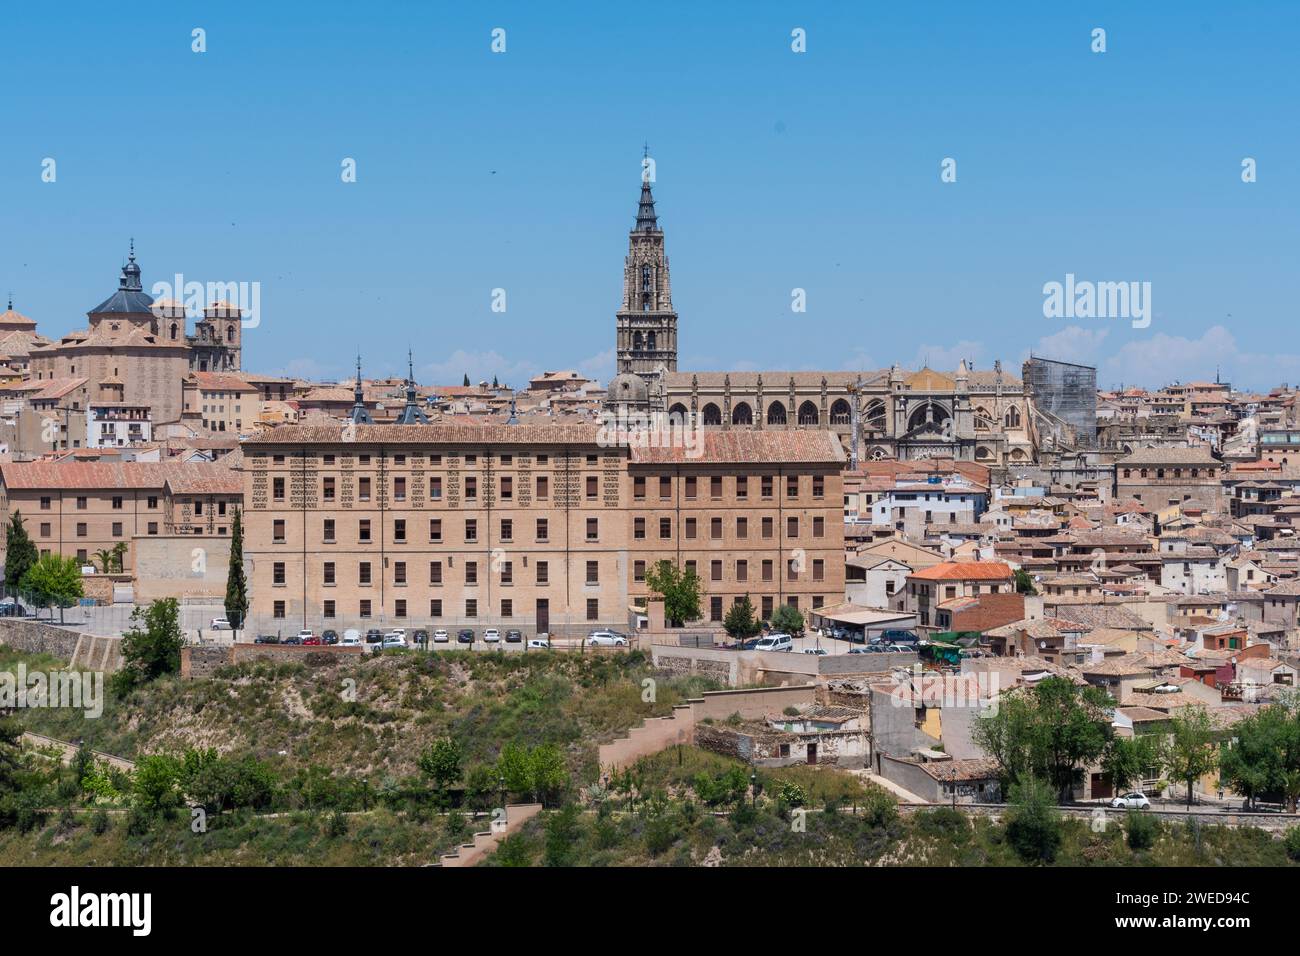 Capturer la beauté intemporelle de Tolède, en Espagne : un paysage panoramique mettant en valeur le charme historique et la splendeur architecturale Banque D'Images